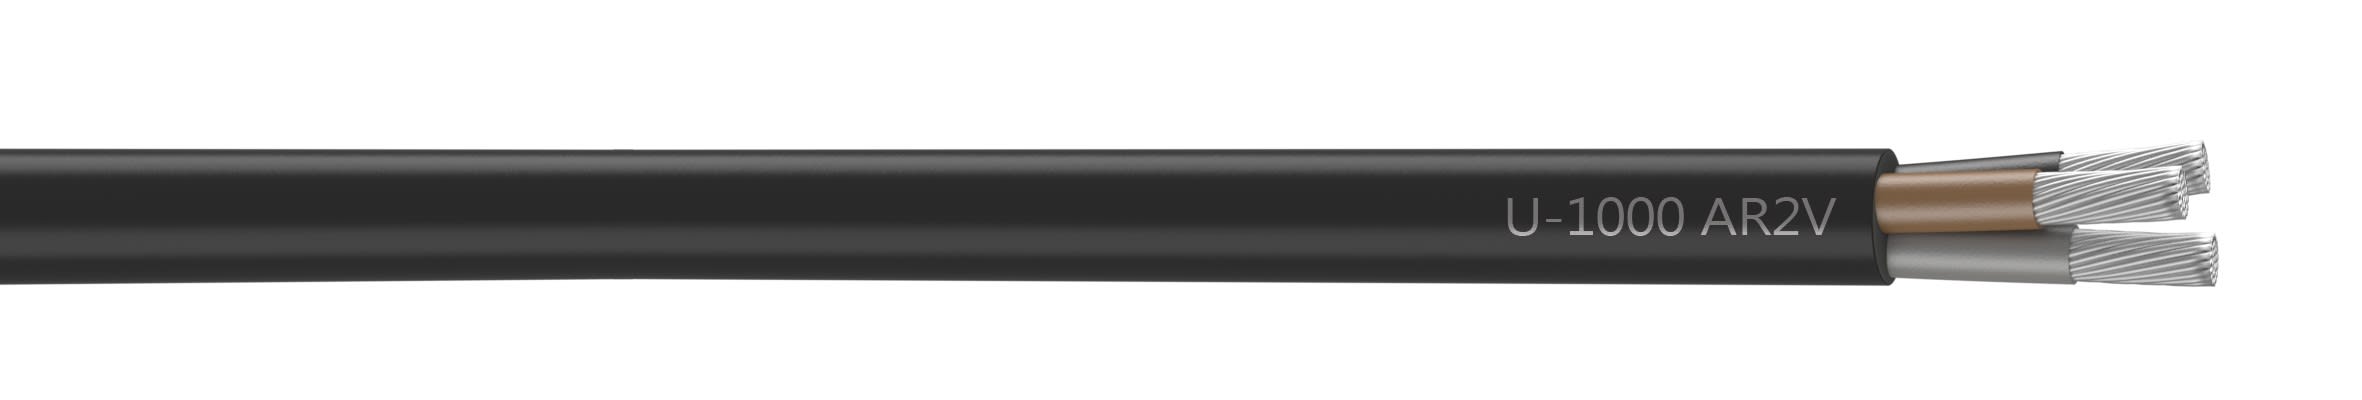 Nexans - Câble rigide U-1000 AR2V aluminium 3x120 longueur à la coupe